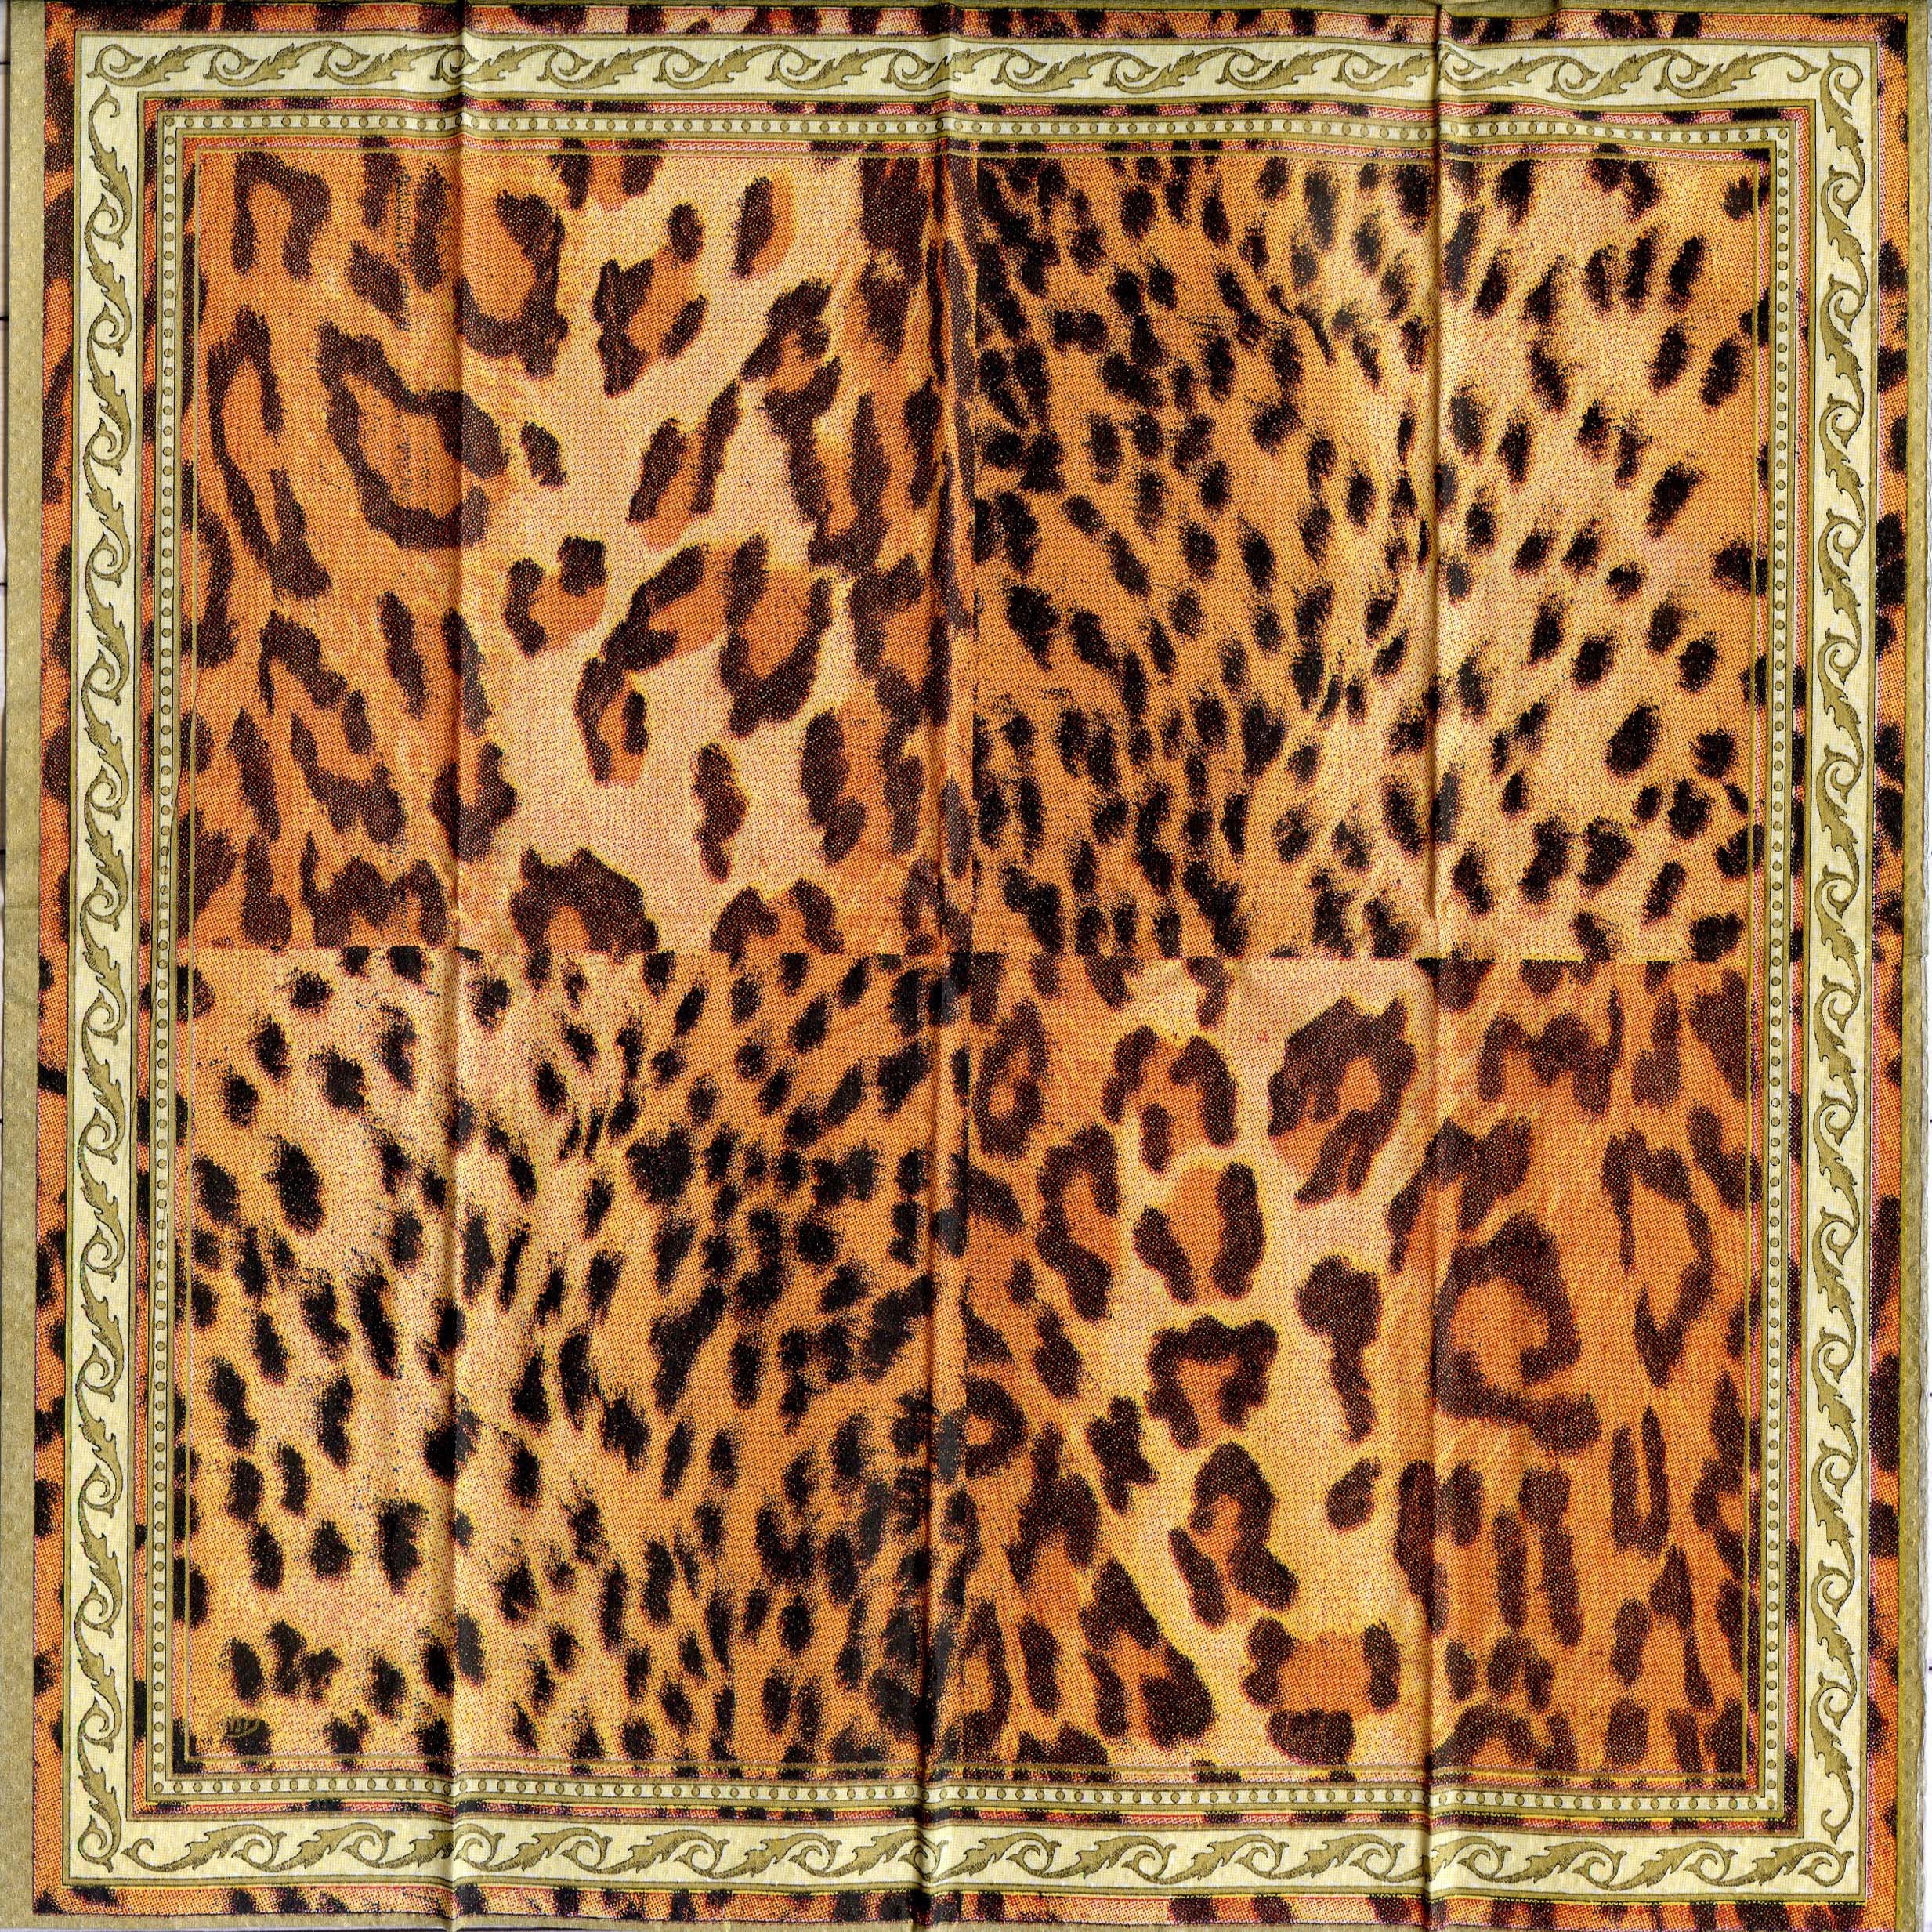 Black Transparent Leopard Print Background, Instant Digital